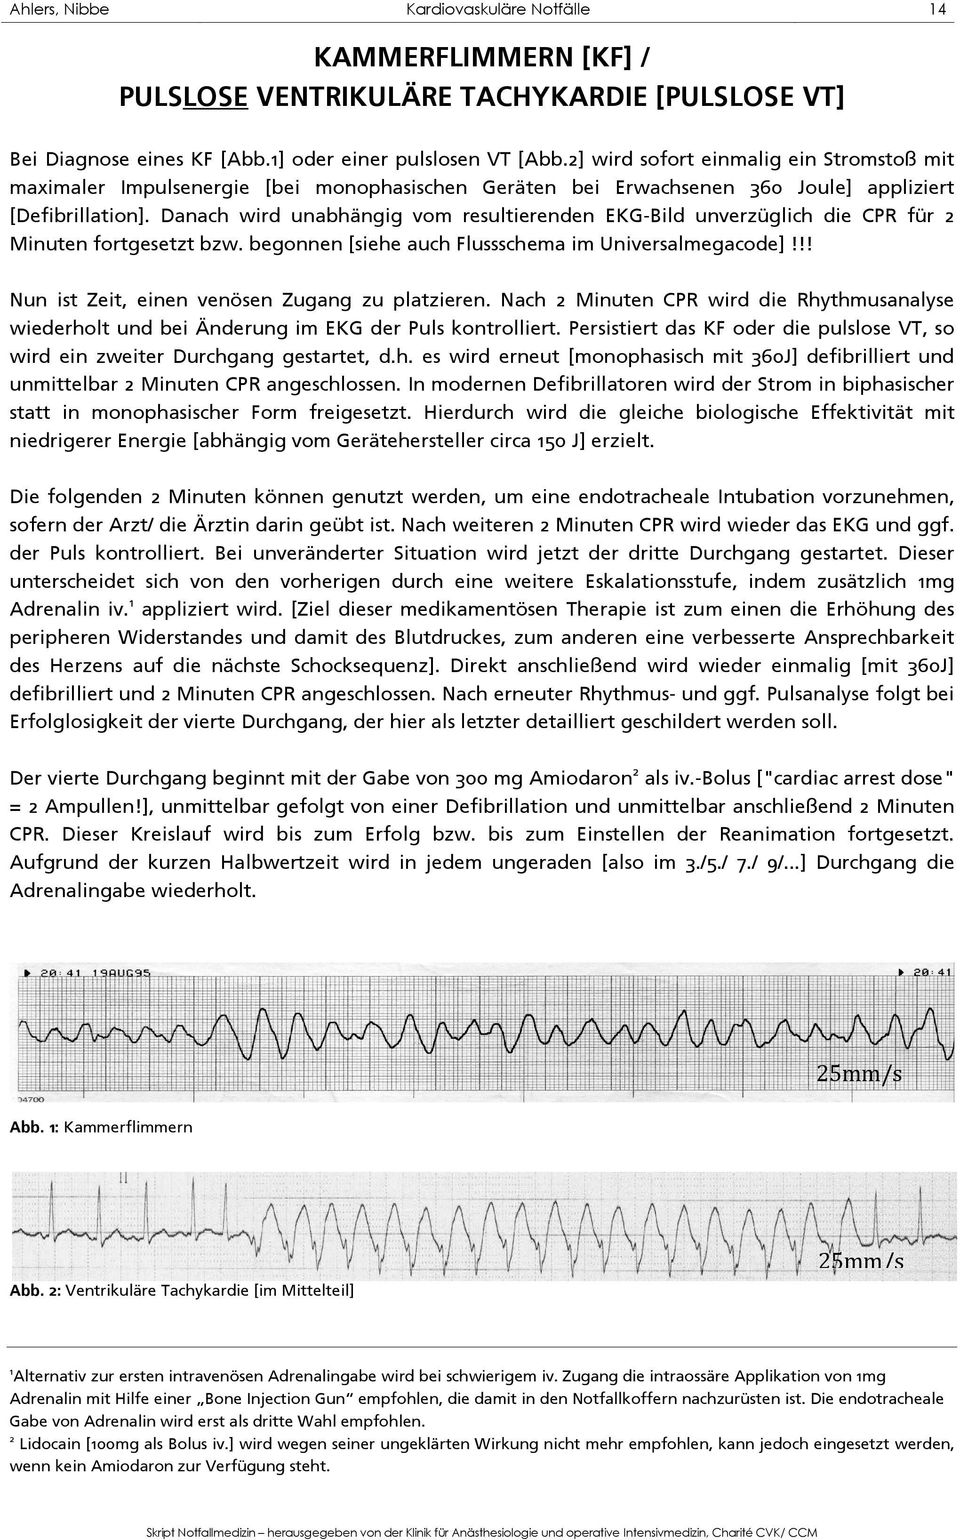 Danach wird unabhängig vom resultierenden EKG-Bild unverzüglich die CPR für 2 Minuten fortgesetzt bzw. begonnen [siehe auch Flussschema im Universalmegacode]!